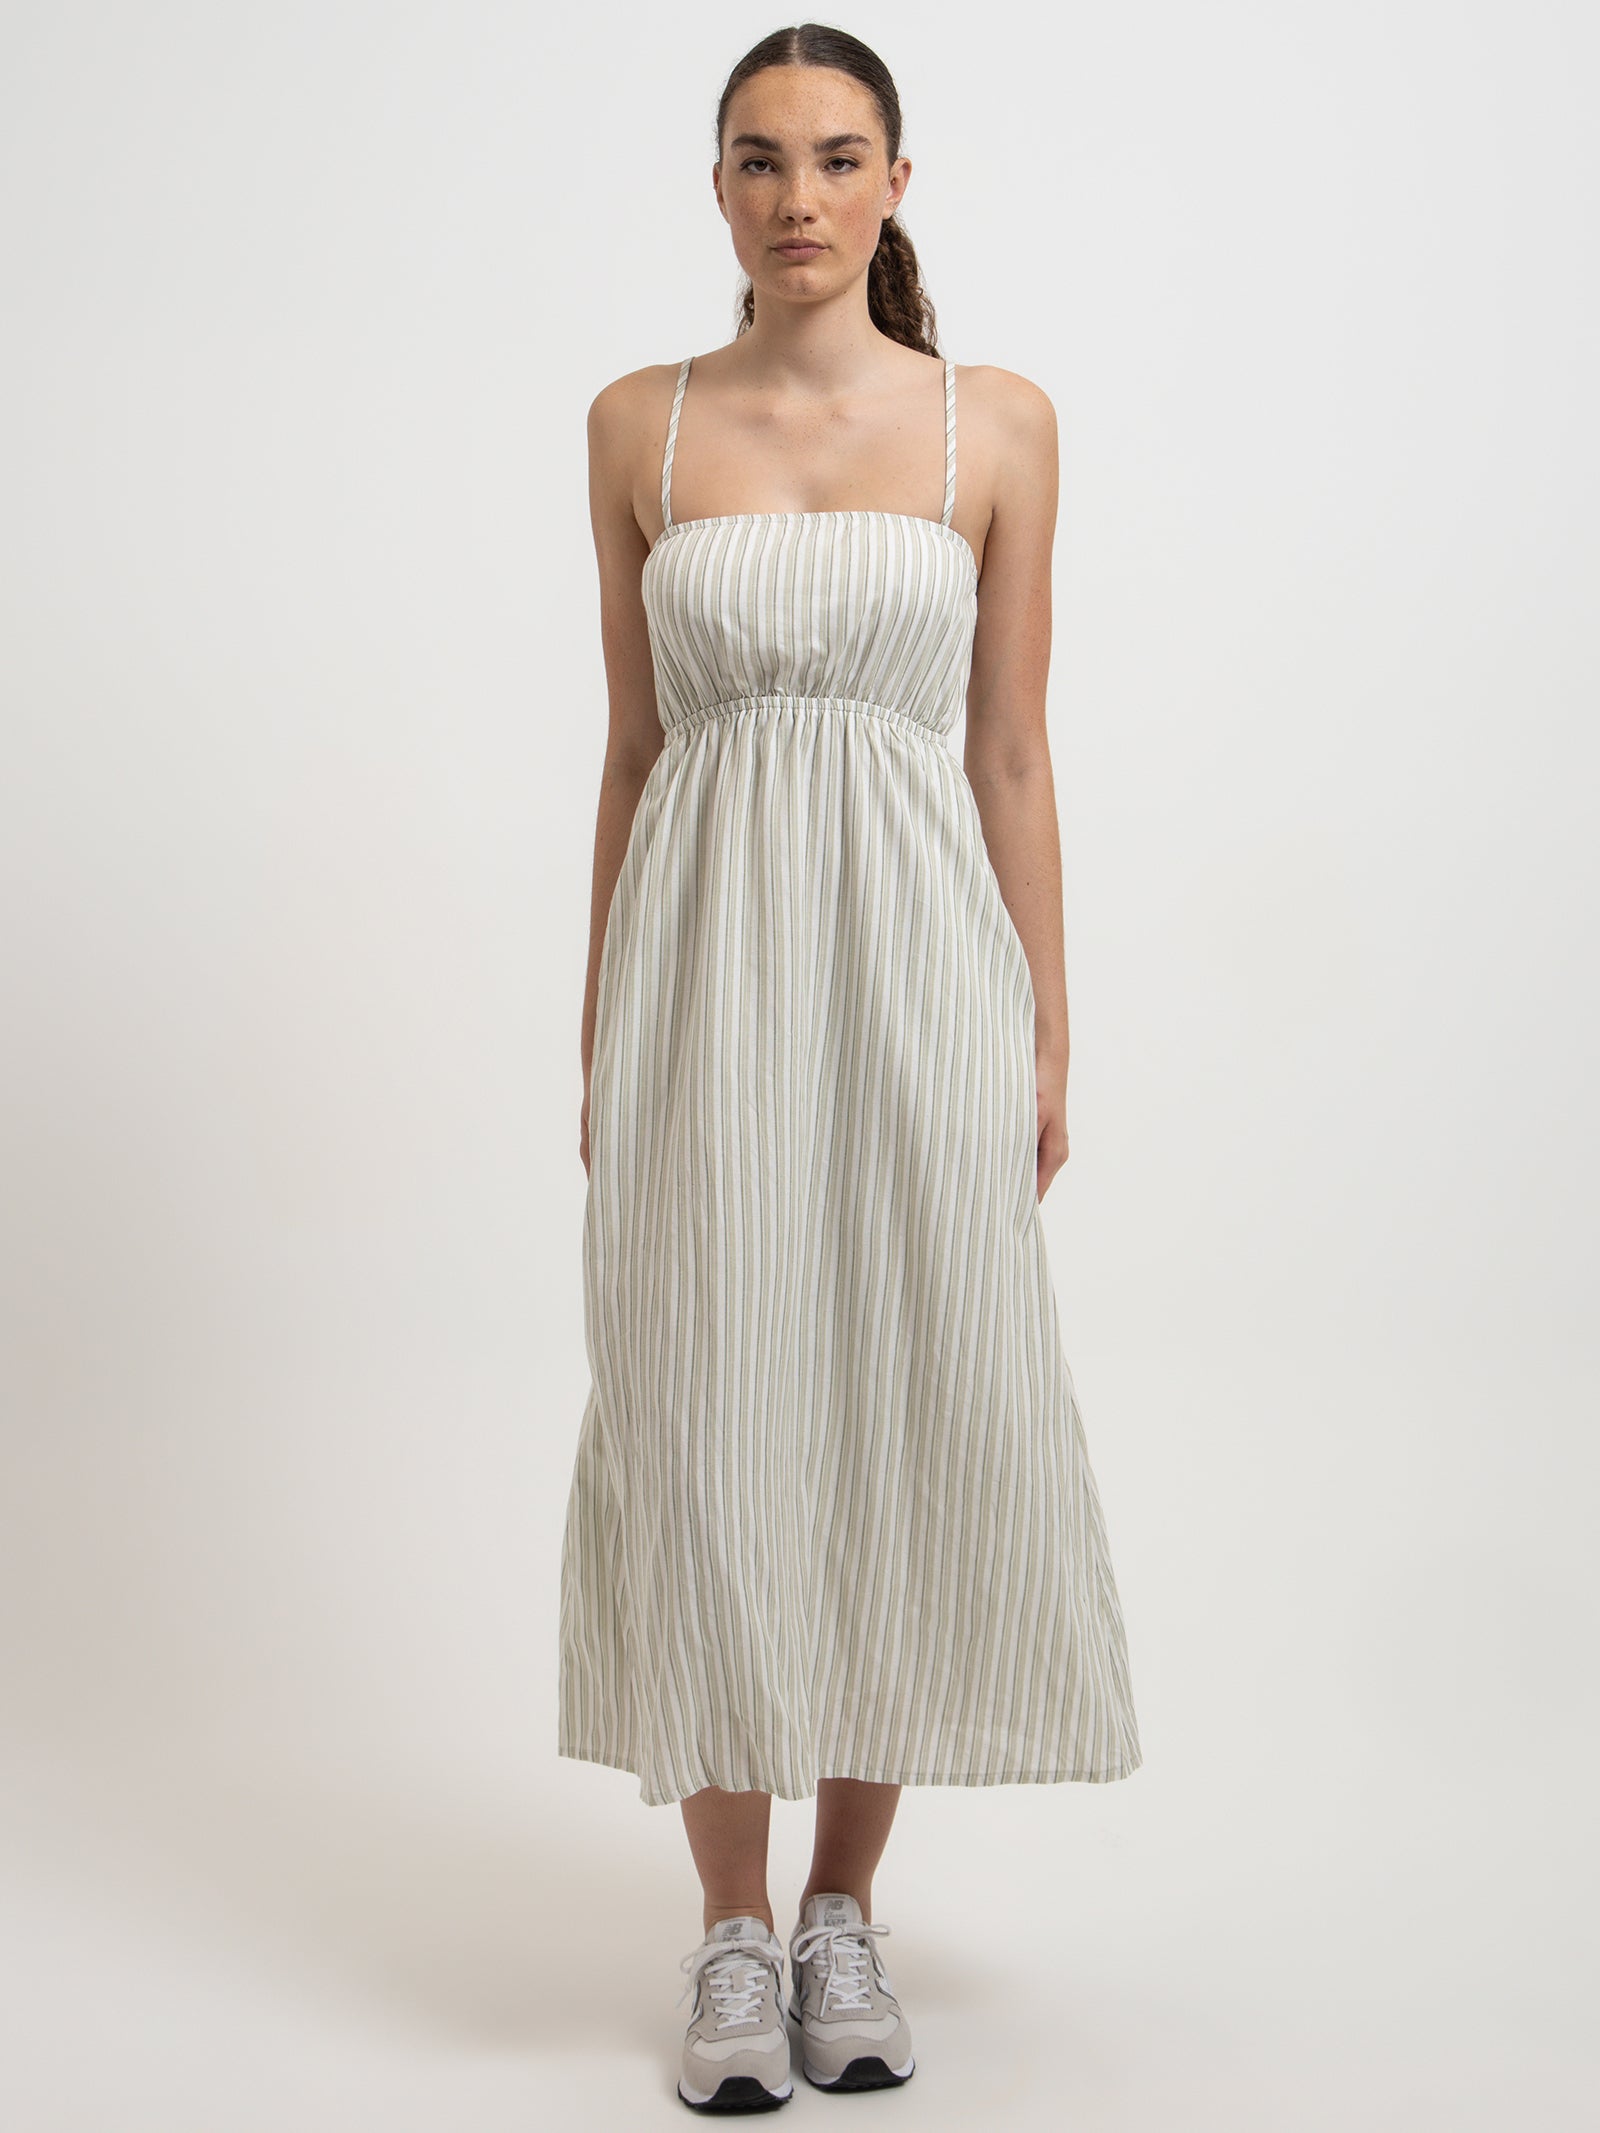 Orla Midi Dress in Sage Stripe